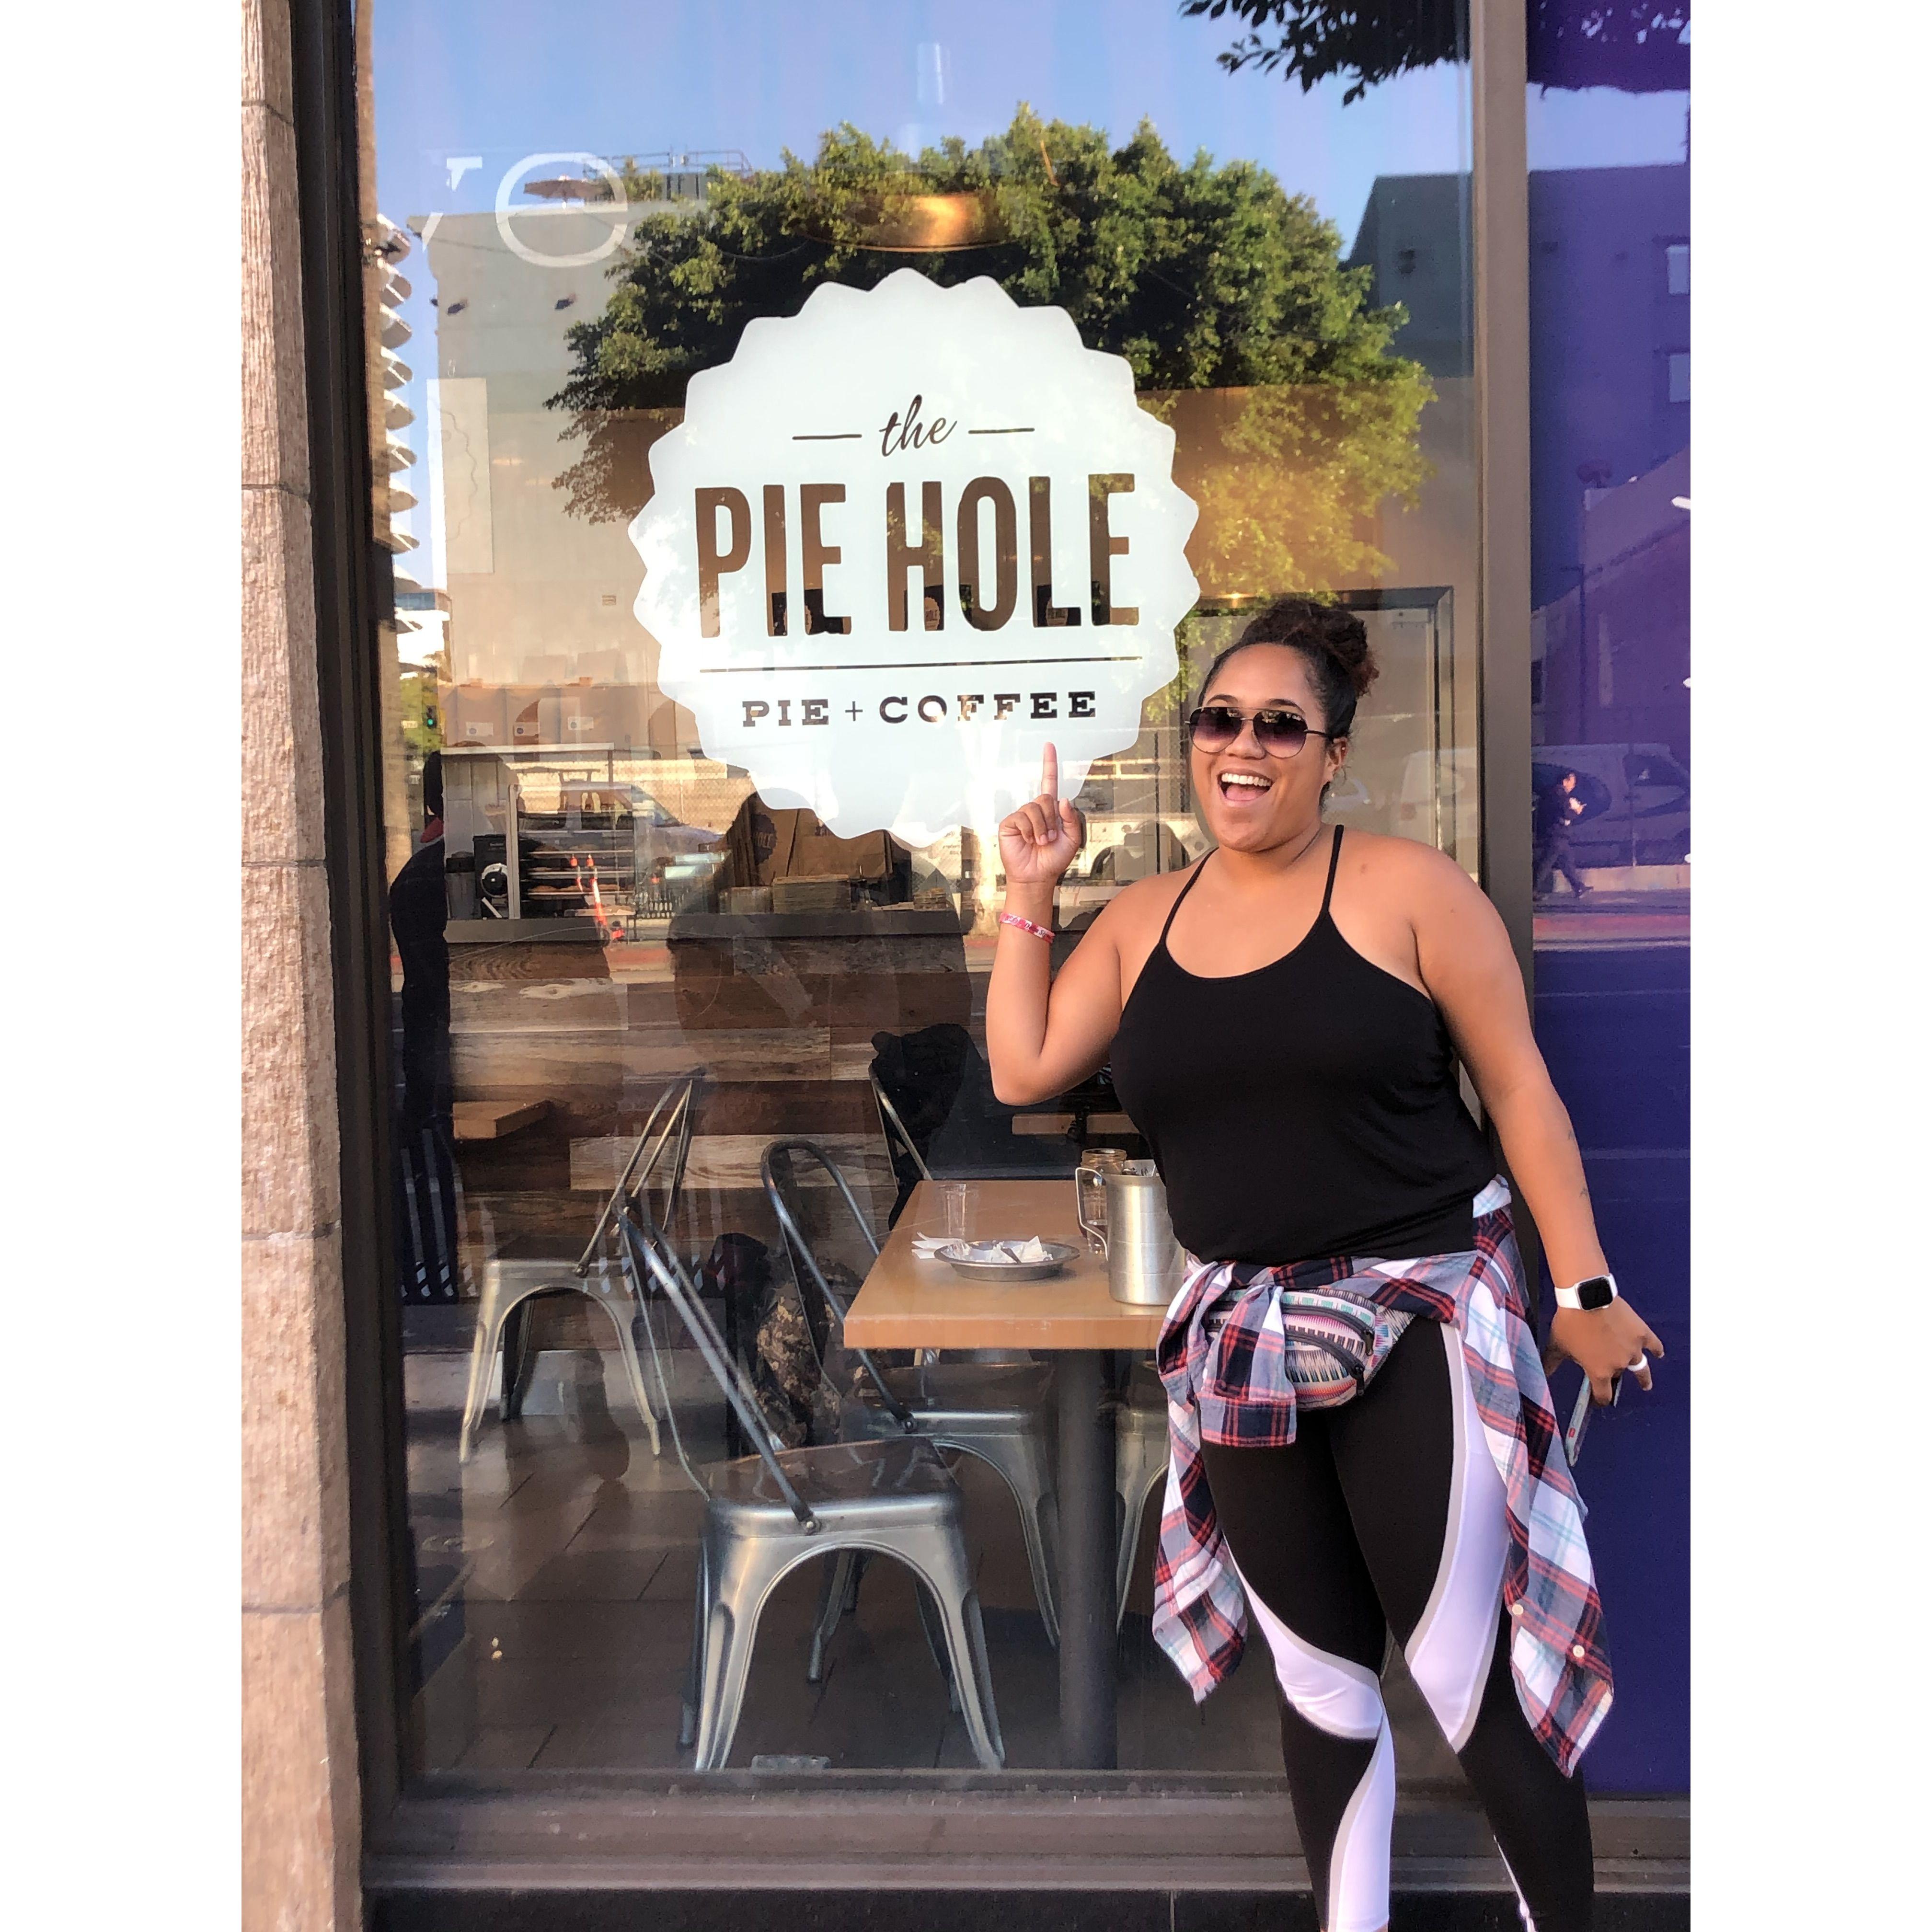 Lithe aka Pie found her shop!